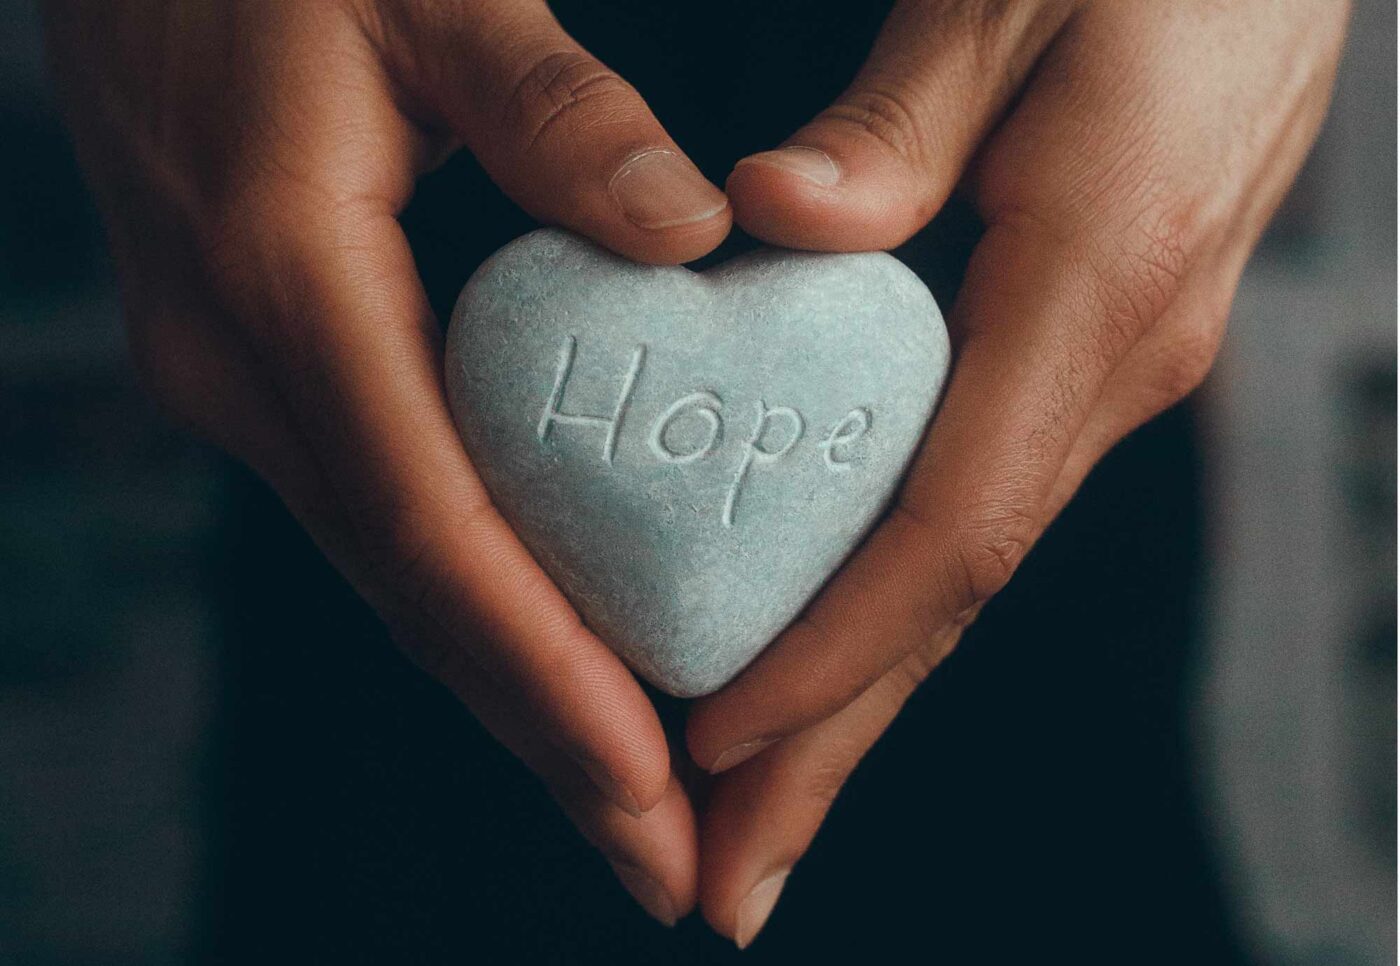 Die Hoffnung ist widerständig und zäh. Sie ist uns eingeschrieben in Körper und Geist, erklärt Michael Chalupka. (Foto: unsplash / Ronak Valobobhai)